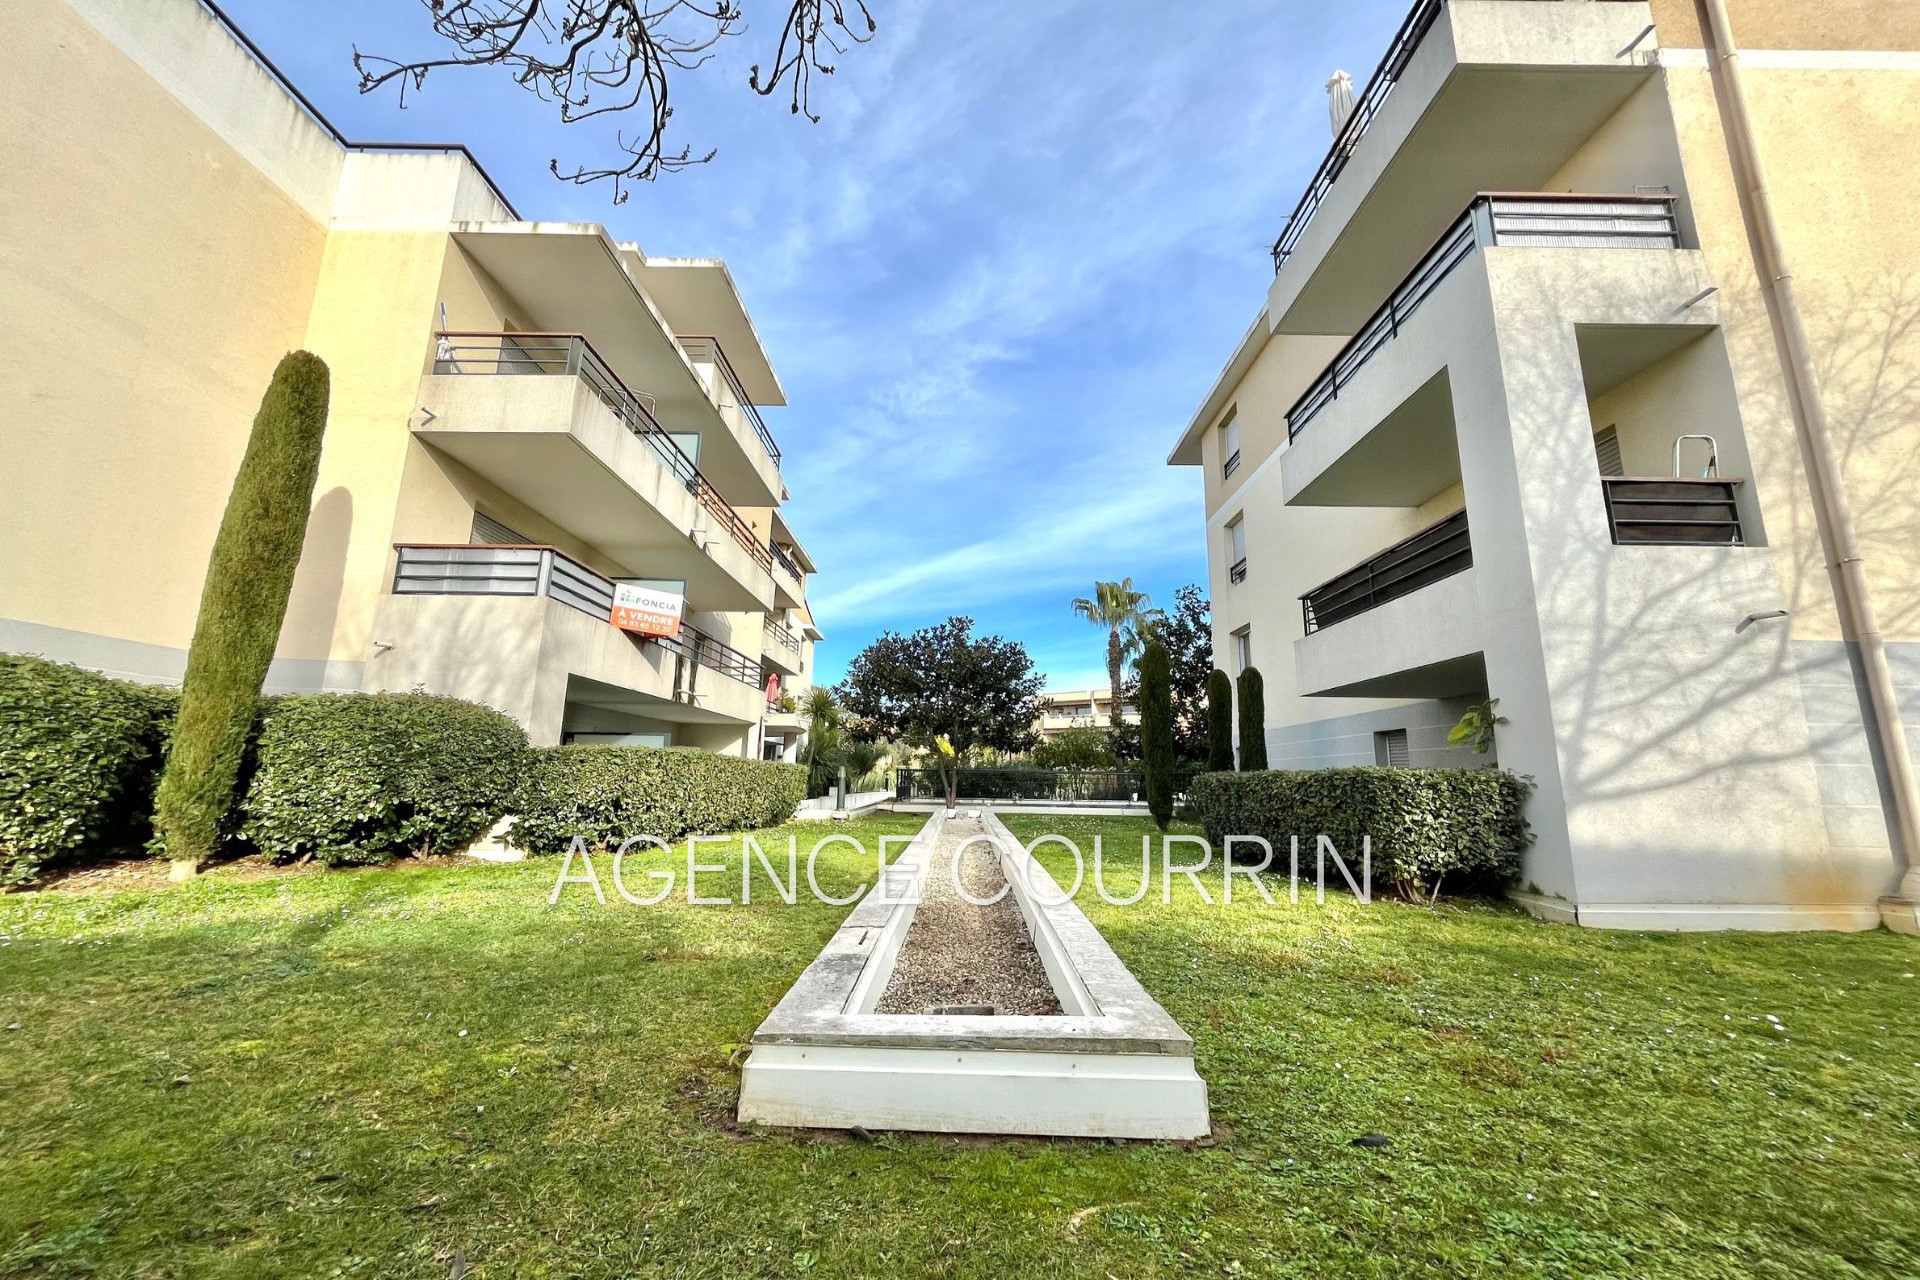 Vente Appartement 45m² à Le Cannet (06110) - Agence Courrin